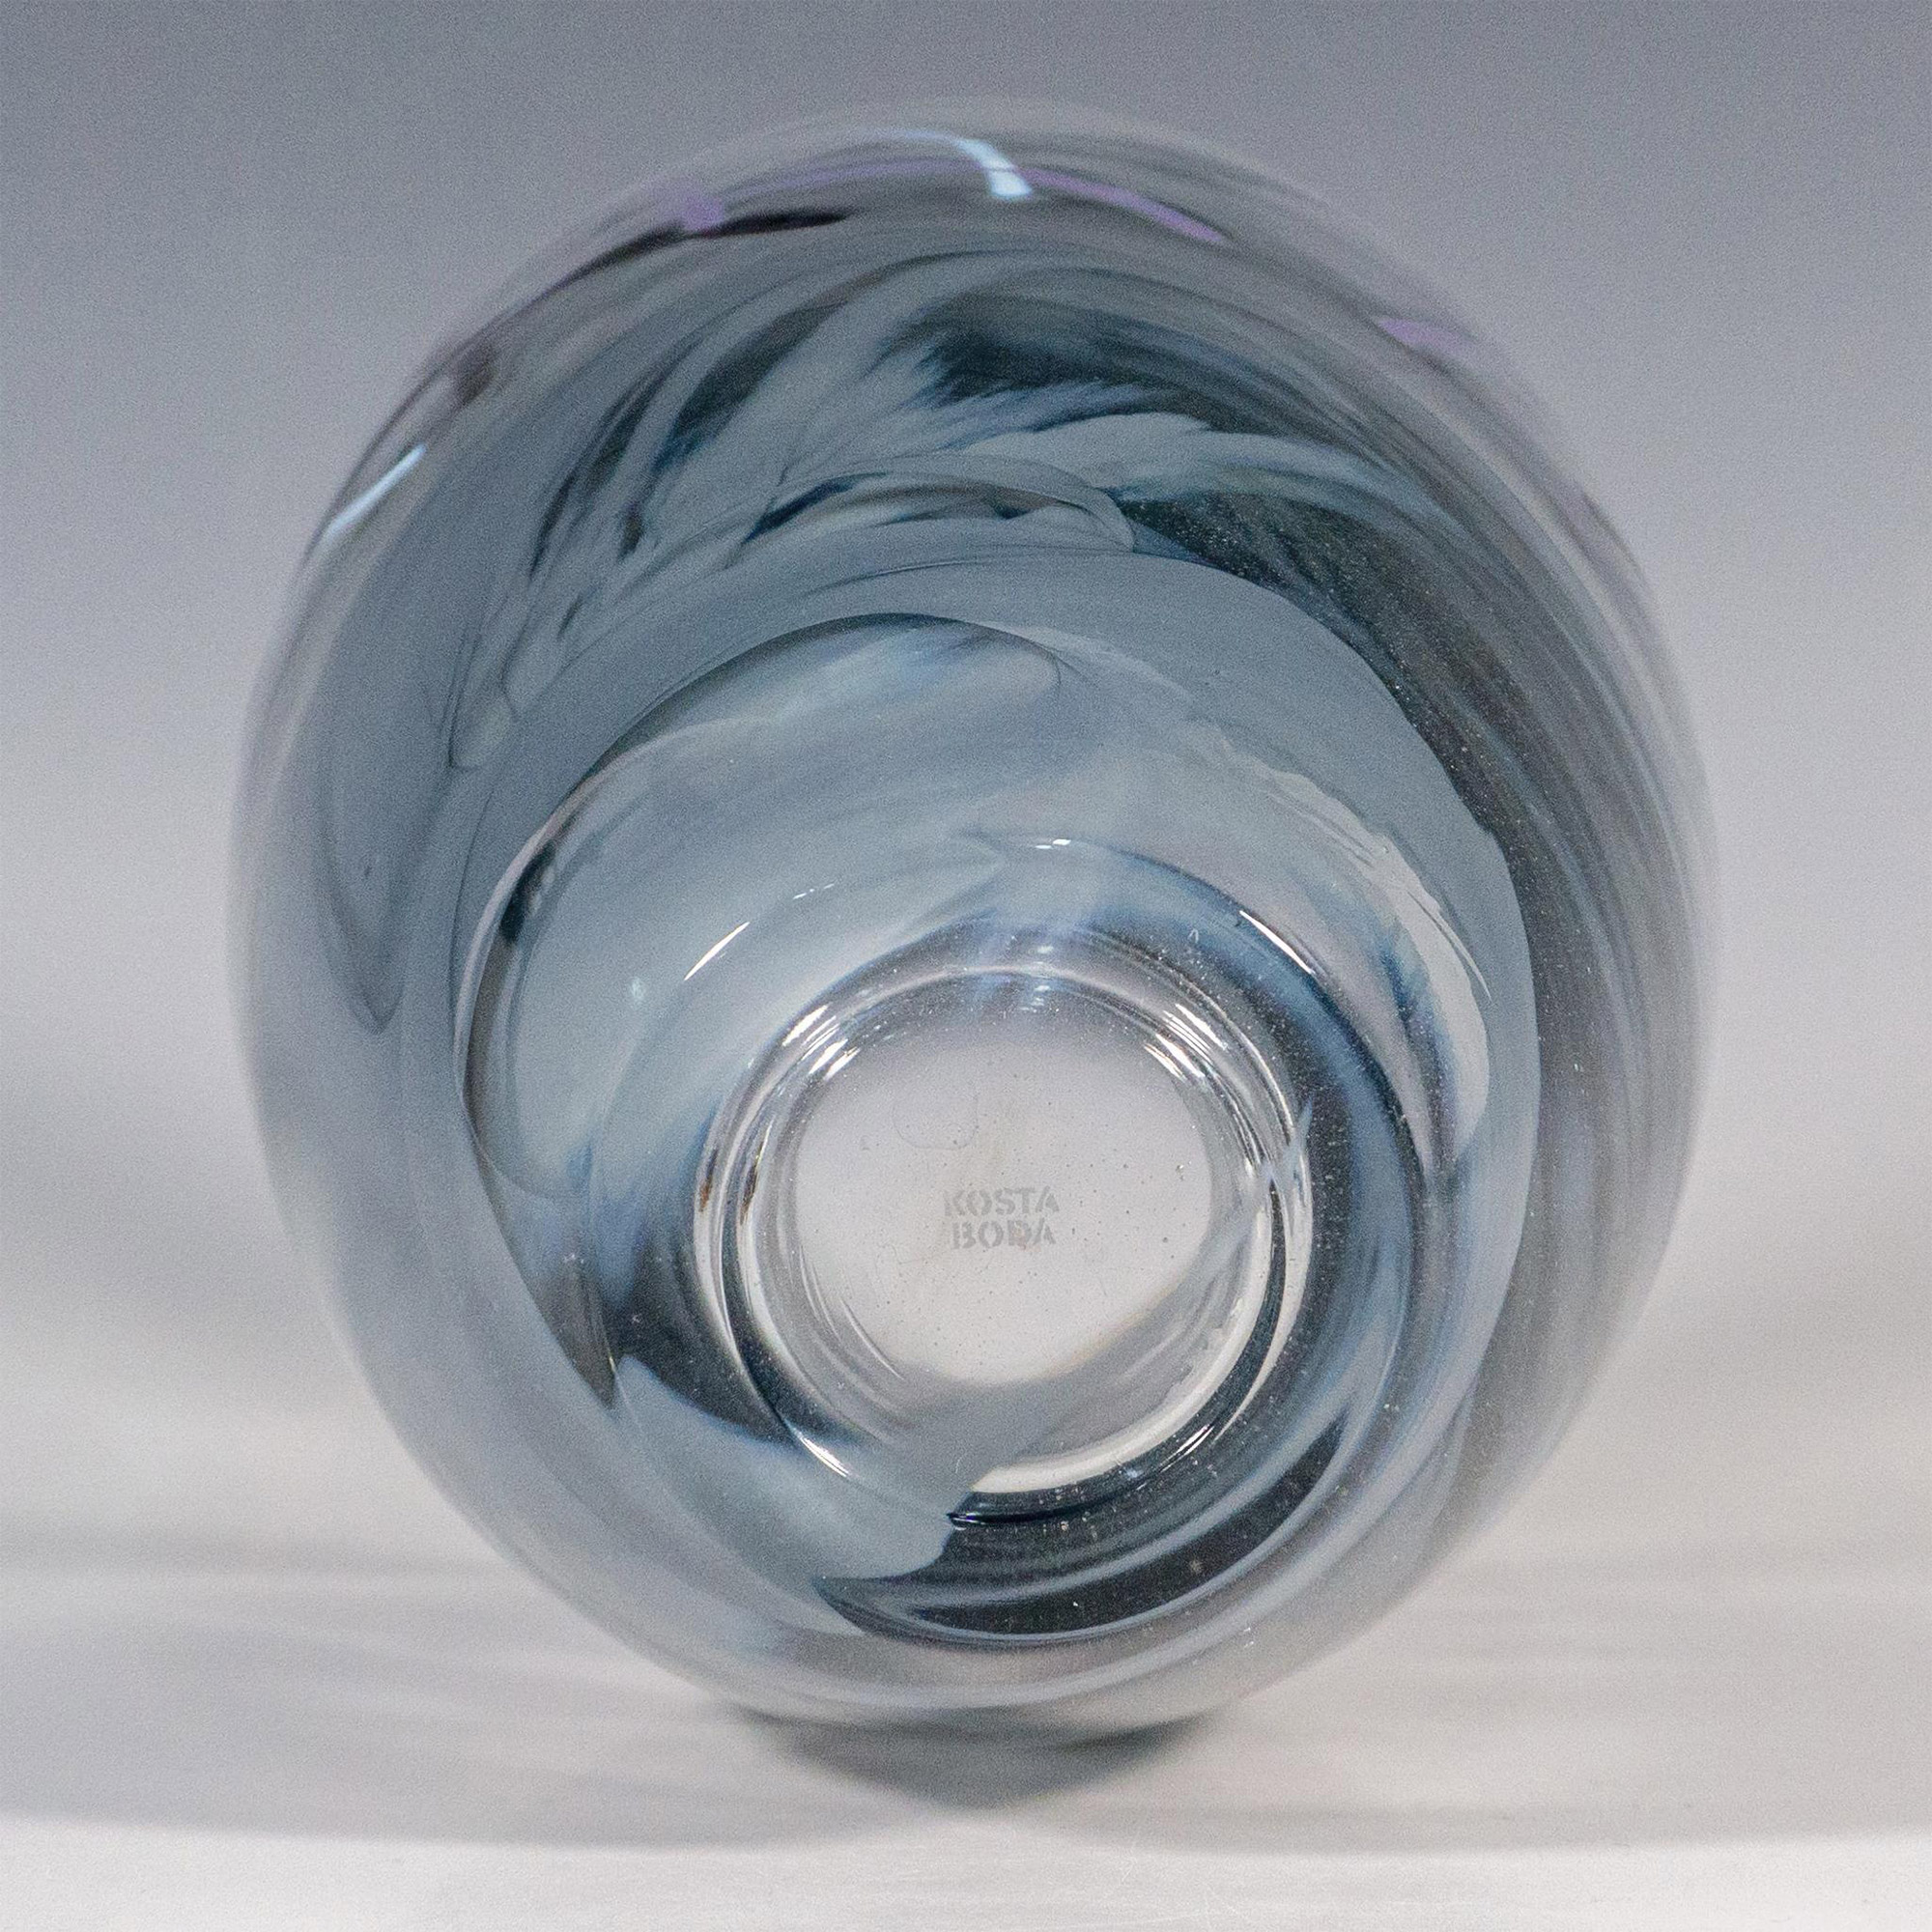 Kosta Boda by Anna Ehrner Glass Vase, Contrast - Image 4 of 5